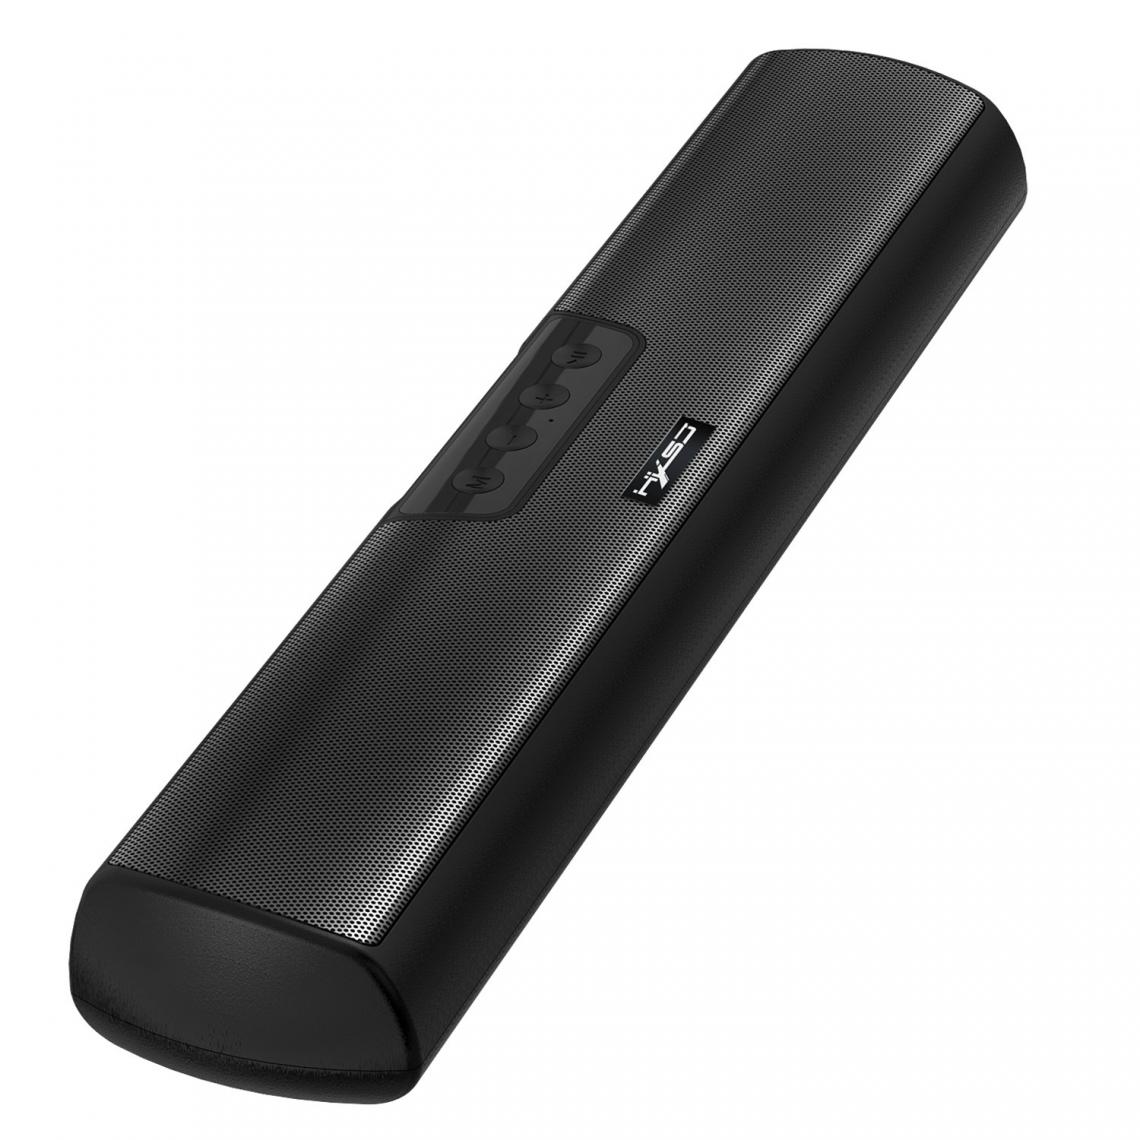 Universal - Haut-parleur Bluetooth Portable Wireless Transmission Haut-parleur Stéréo Ultra Low Support TF Card Hands-Free Appeal Samsung Mobile | Noir(Le noir) - Enceinte PC